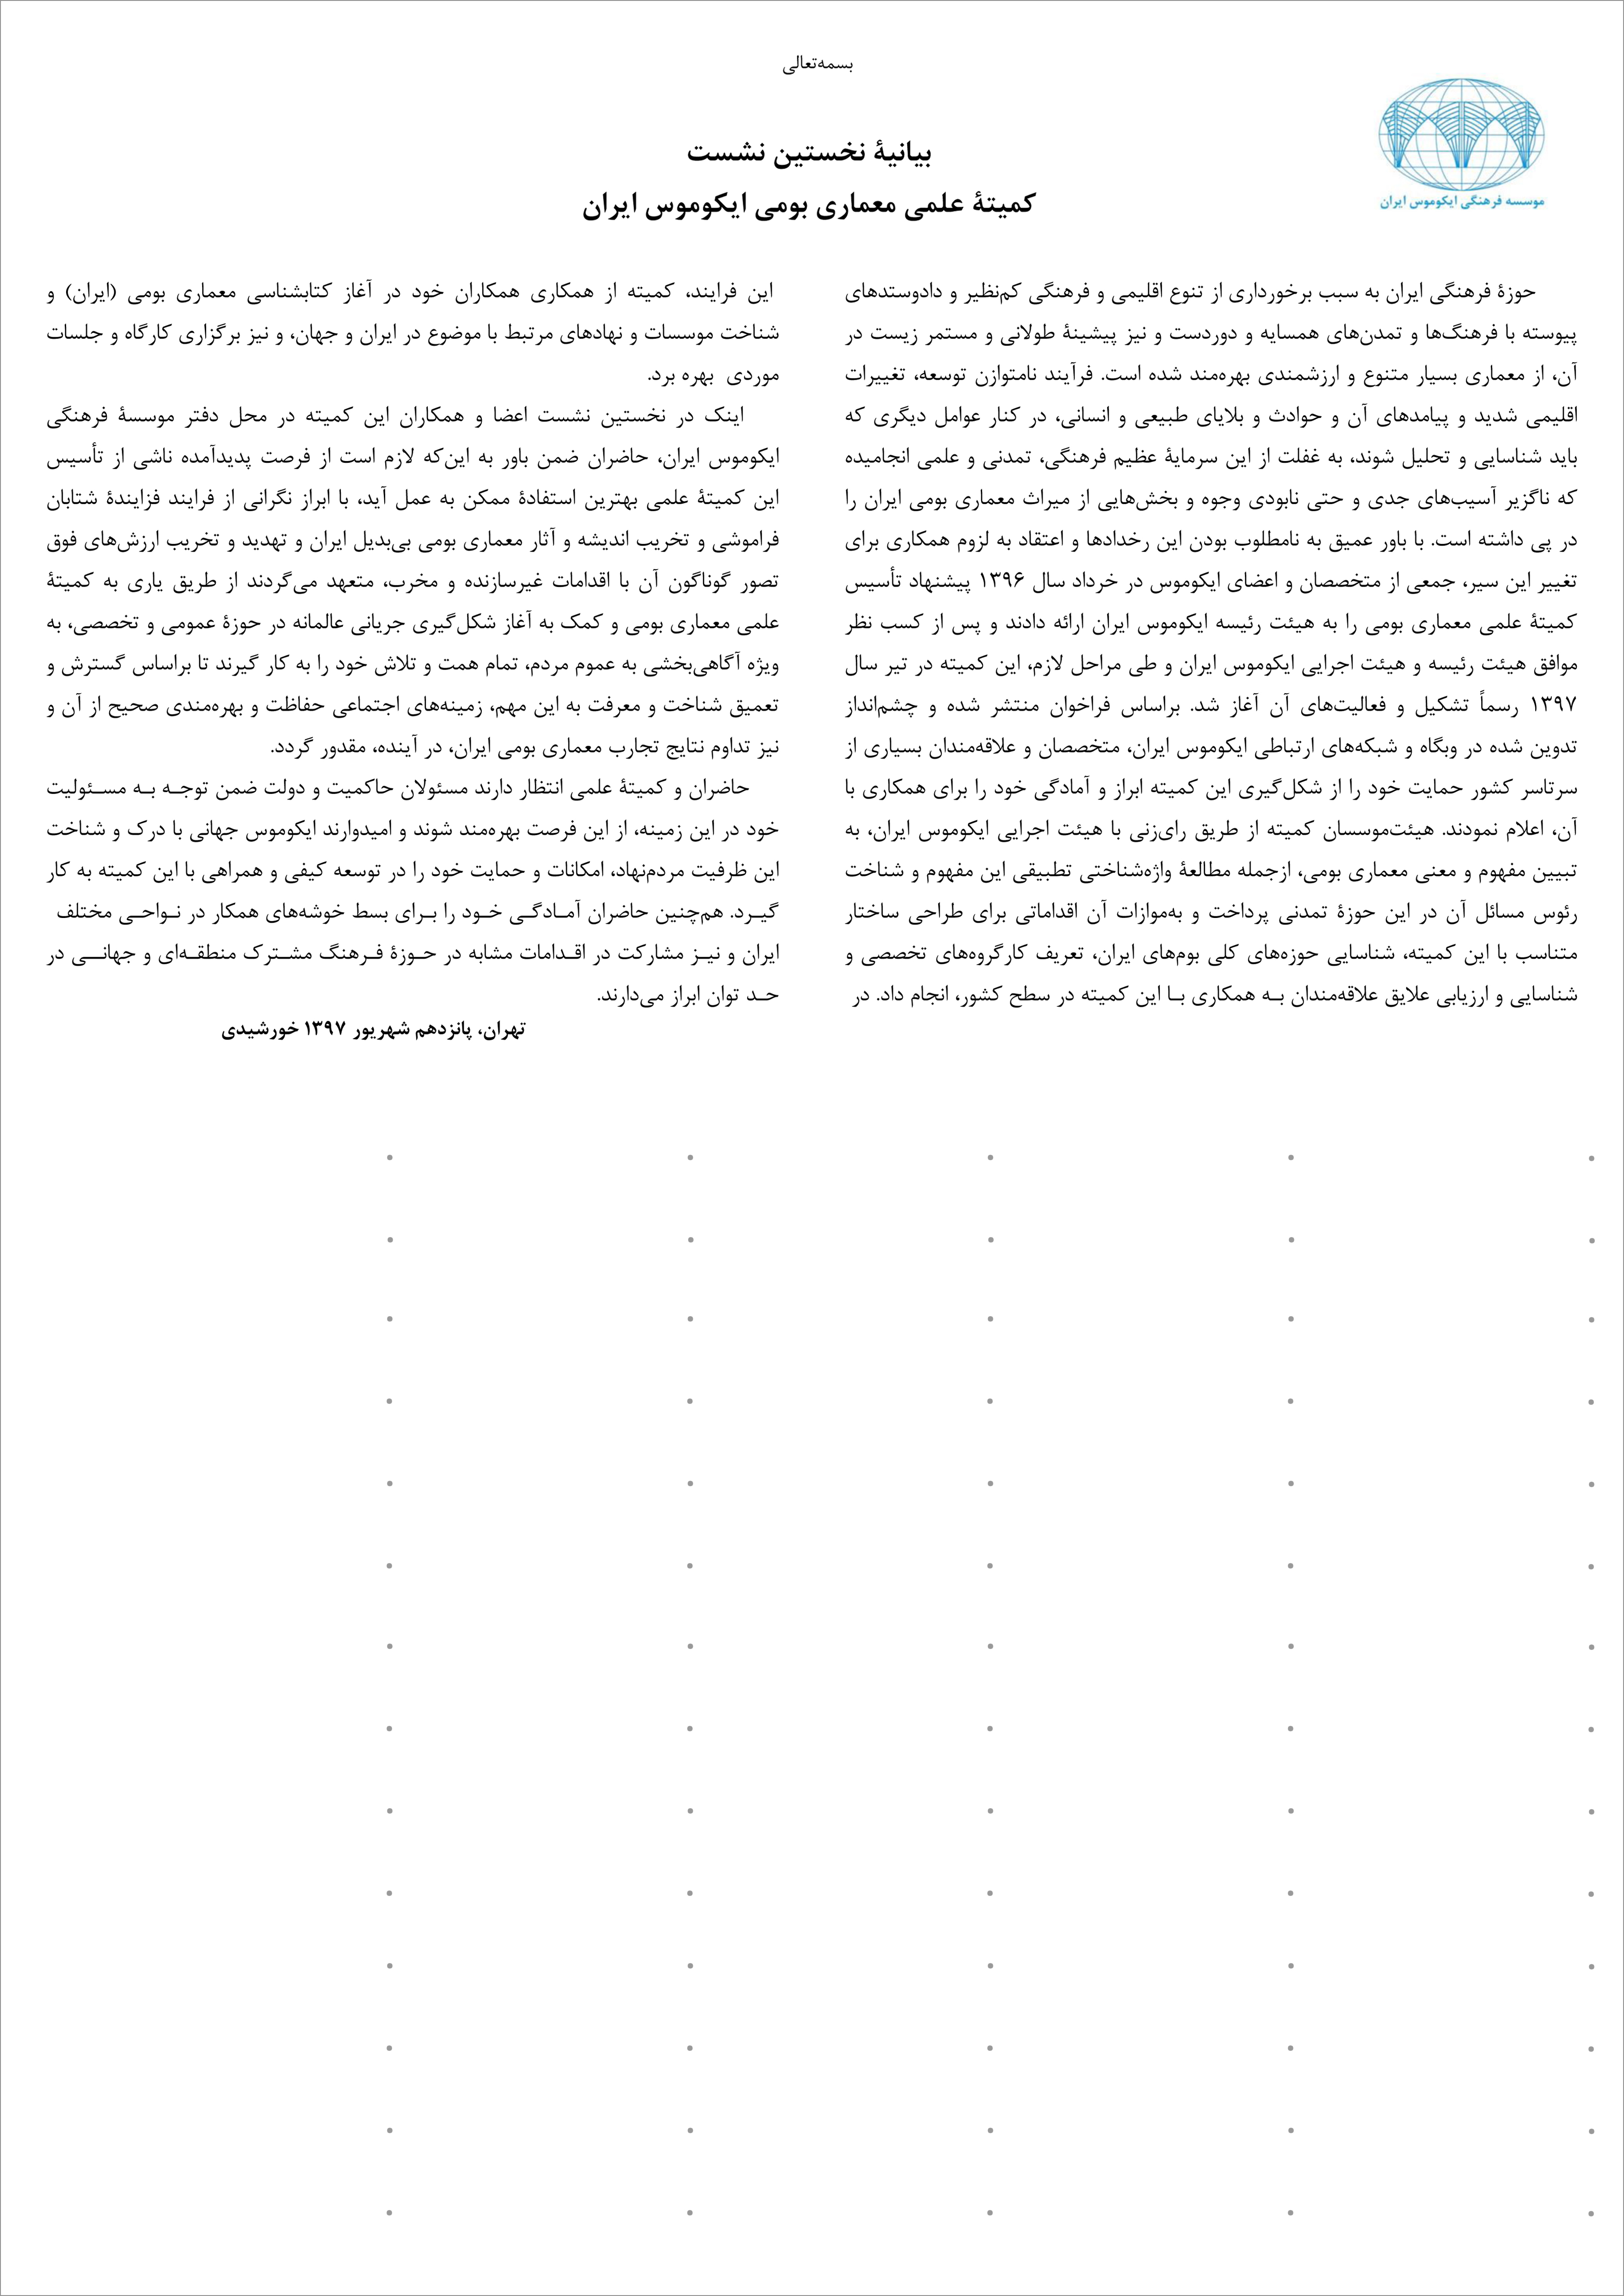 بیانیه نخست کمیته علمی معماری بومی ایکوموس ایران صادر شد